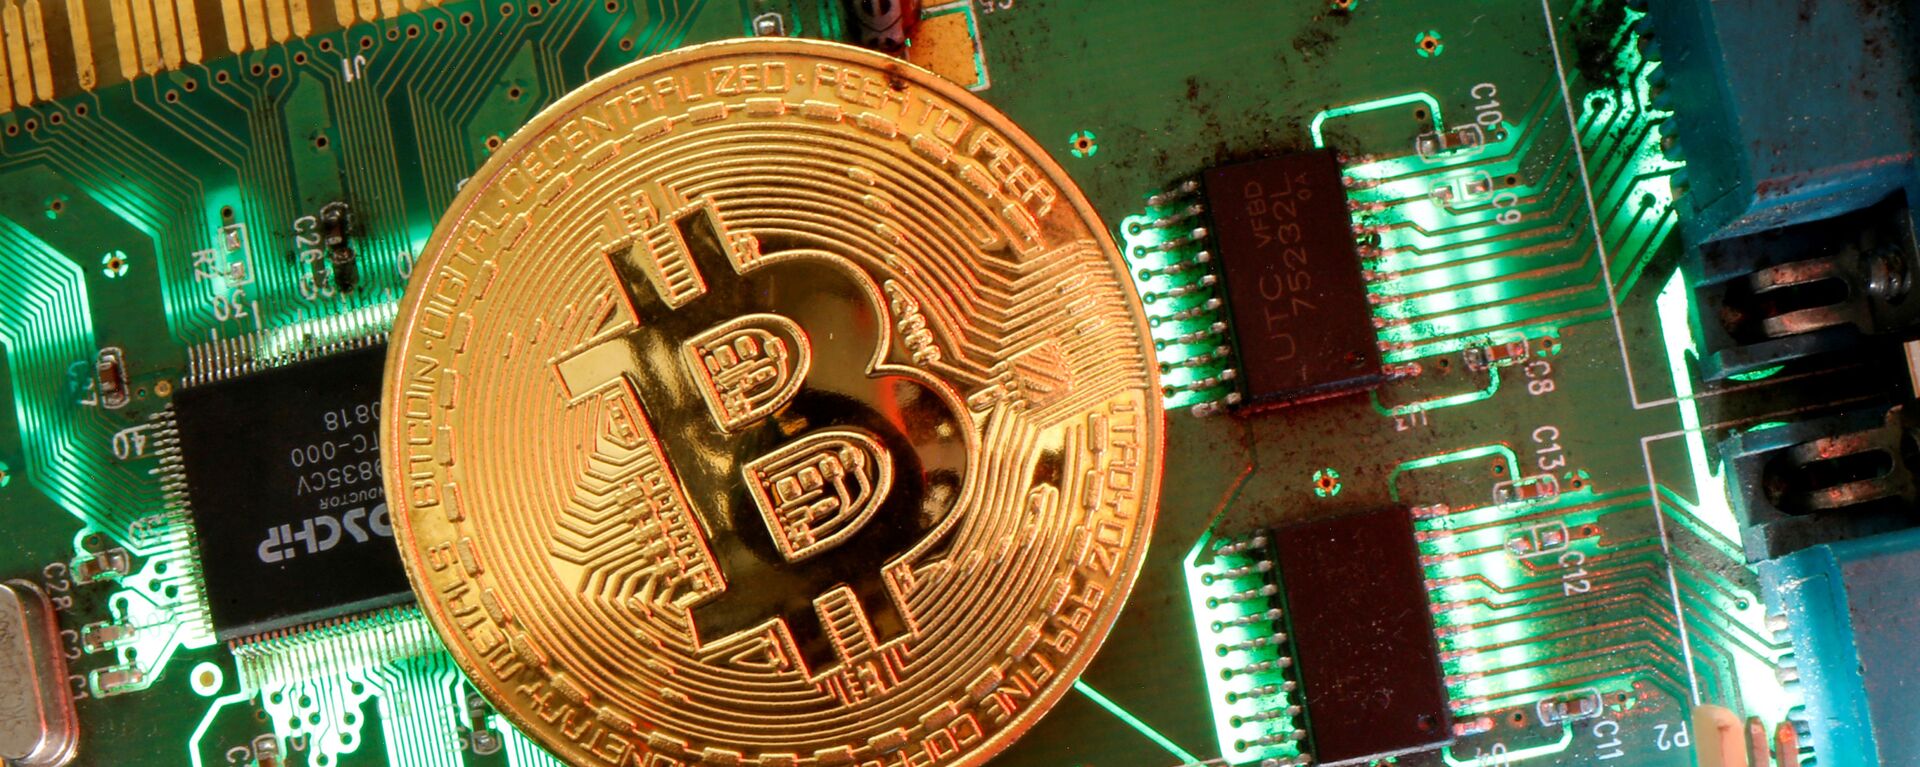 Đại diện của tiền ảo Bitcoin được nhìn thấy trên bo mạch chủ trong hình minh họa này được chụp vào ngày 24 tháng 4 năm 2020 - Sputnik Việt Nam, 1920, 22.09.2021